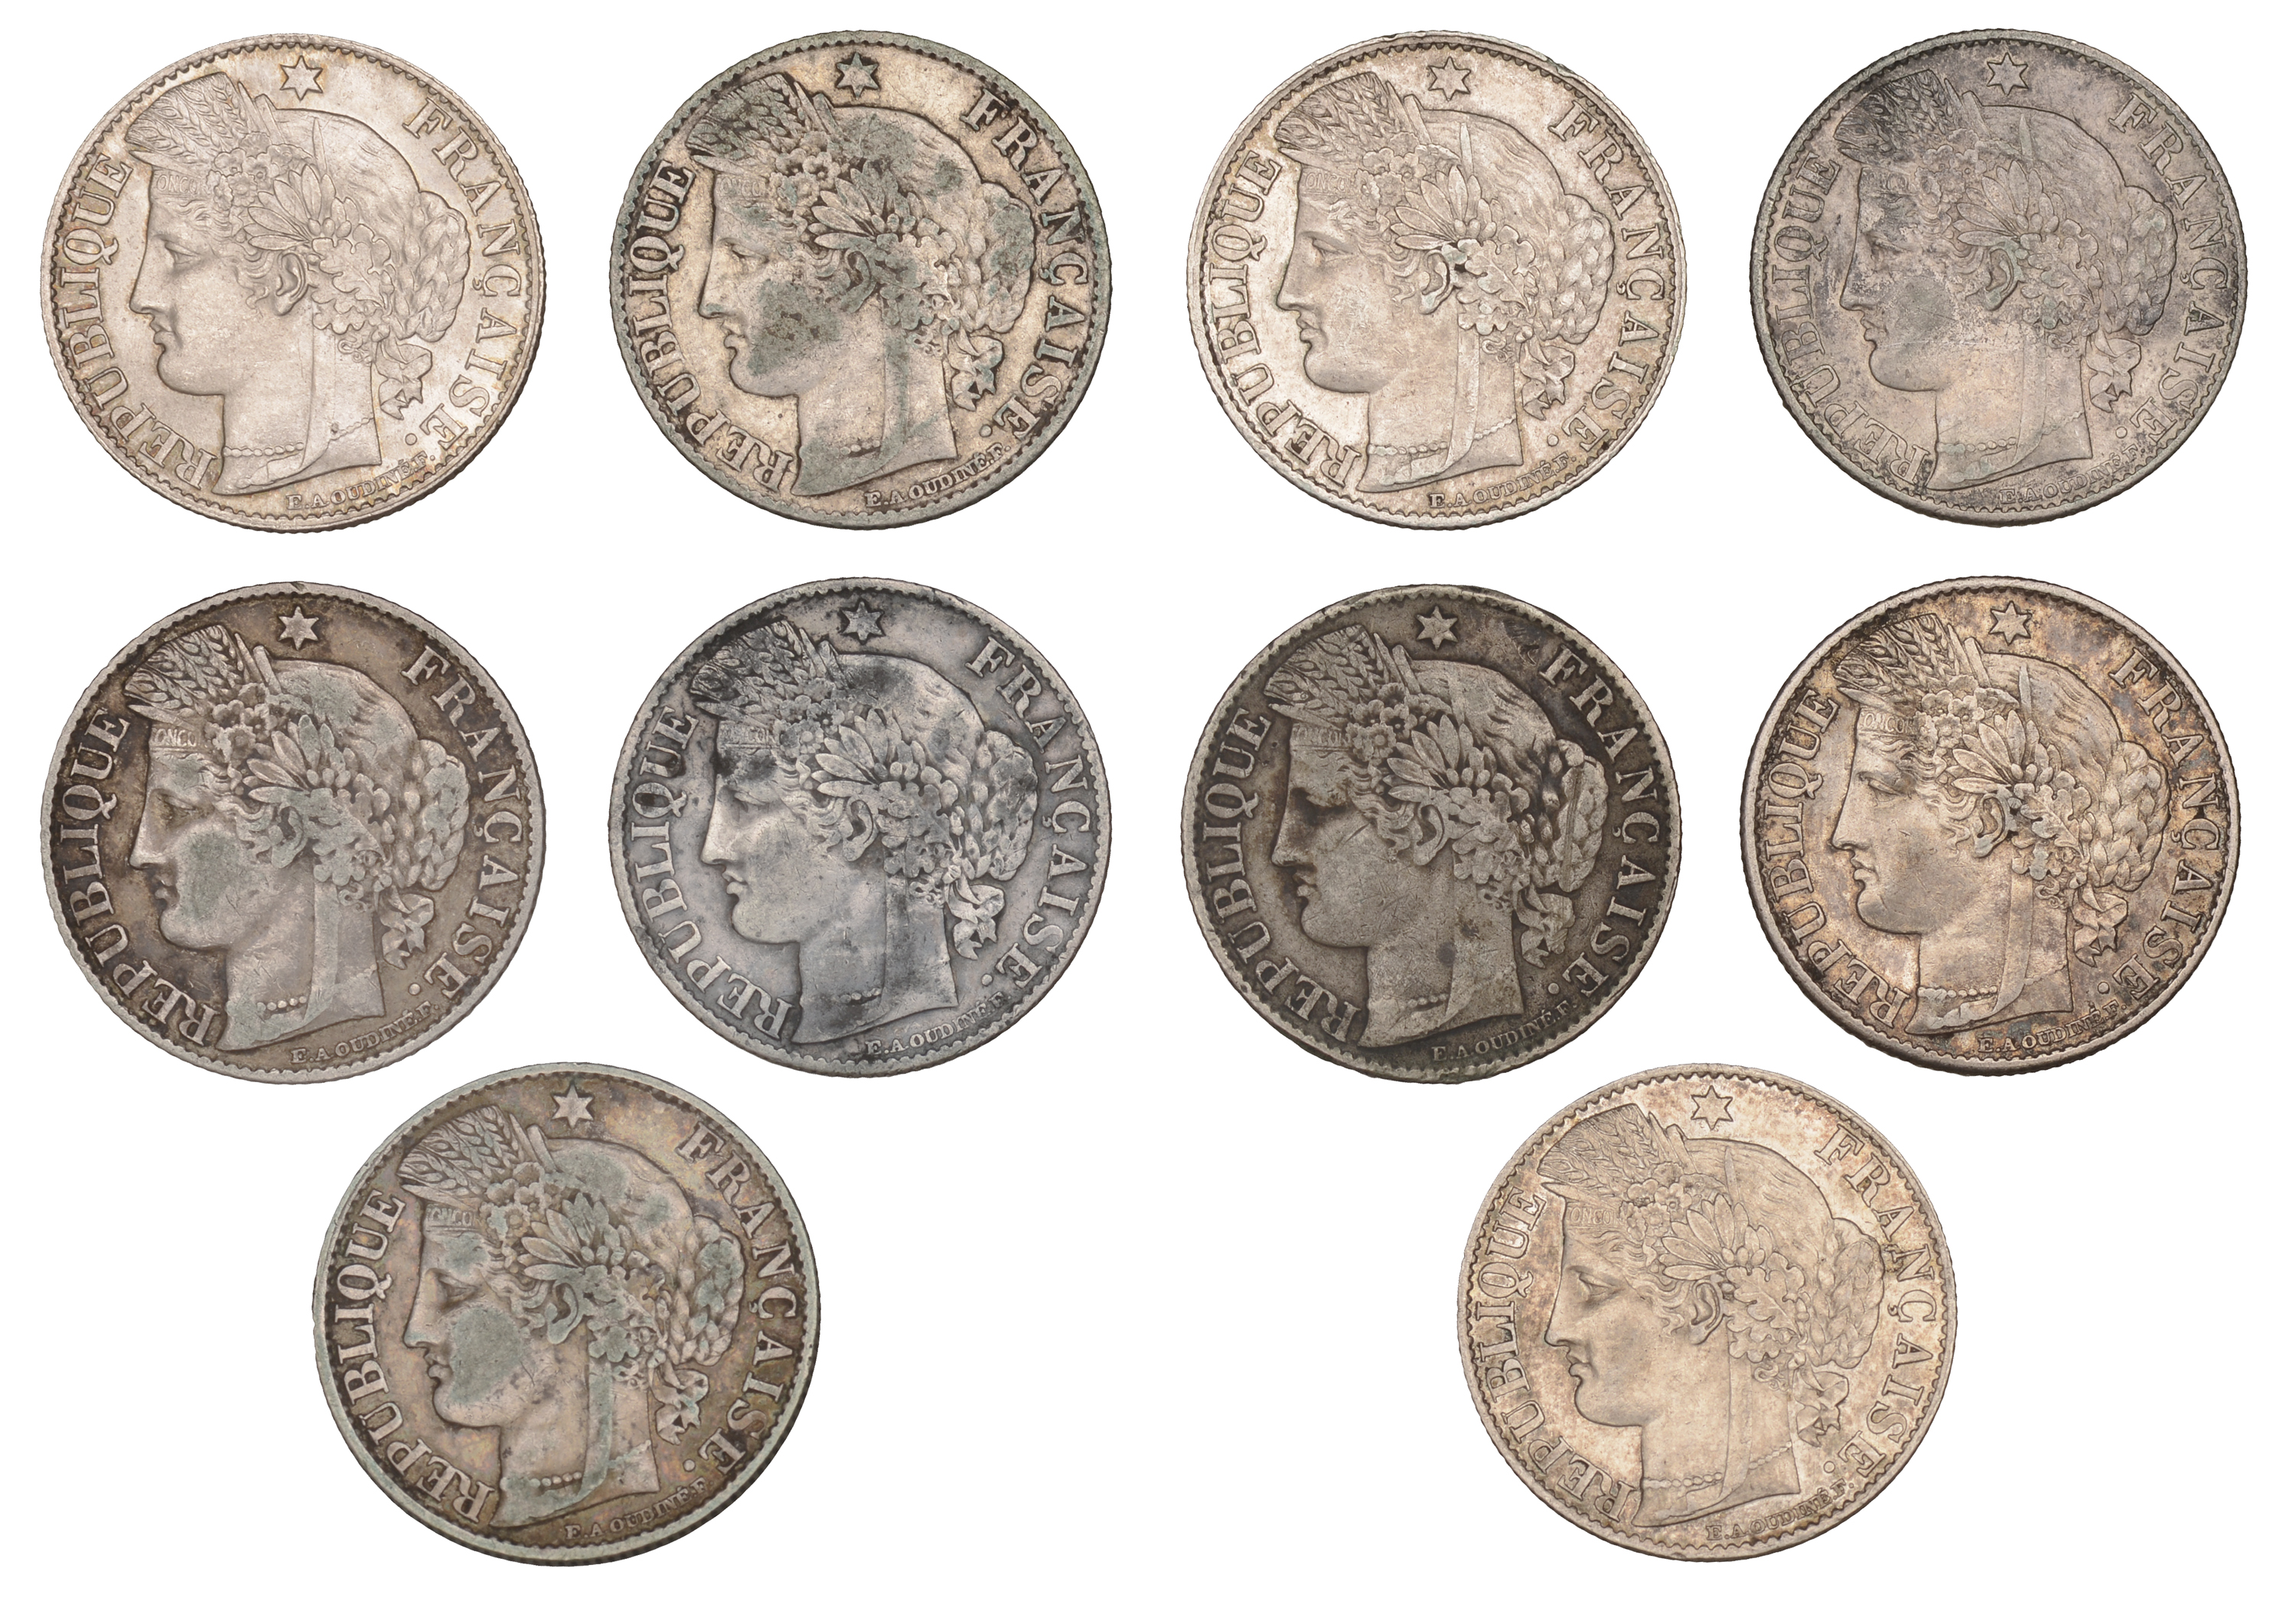 France, Third Republic (1871-1940), 50 Centimes (10), 1872a, 1873a, 1874a, 1881a, 1882a, 188...